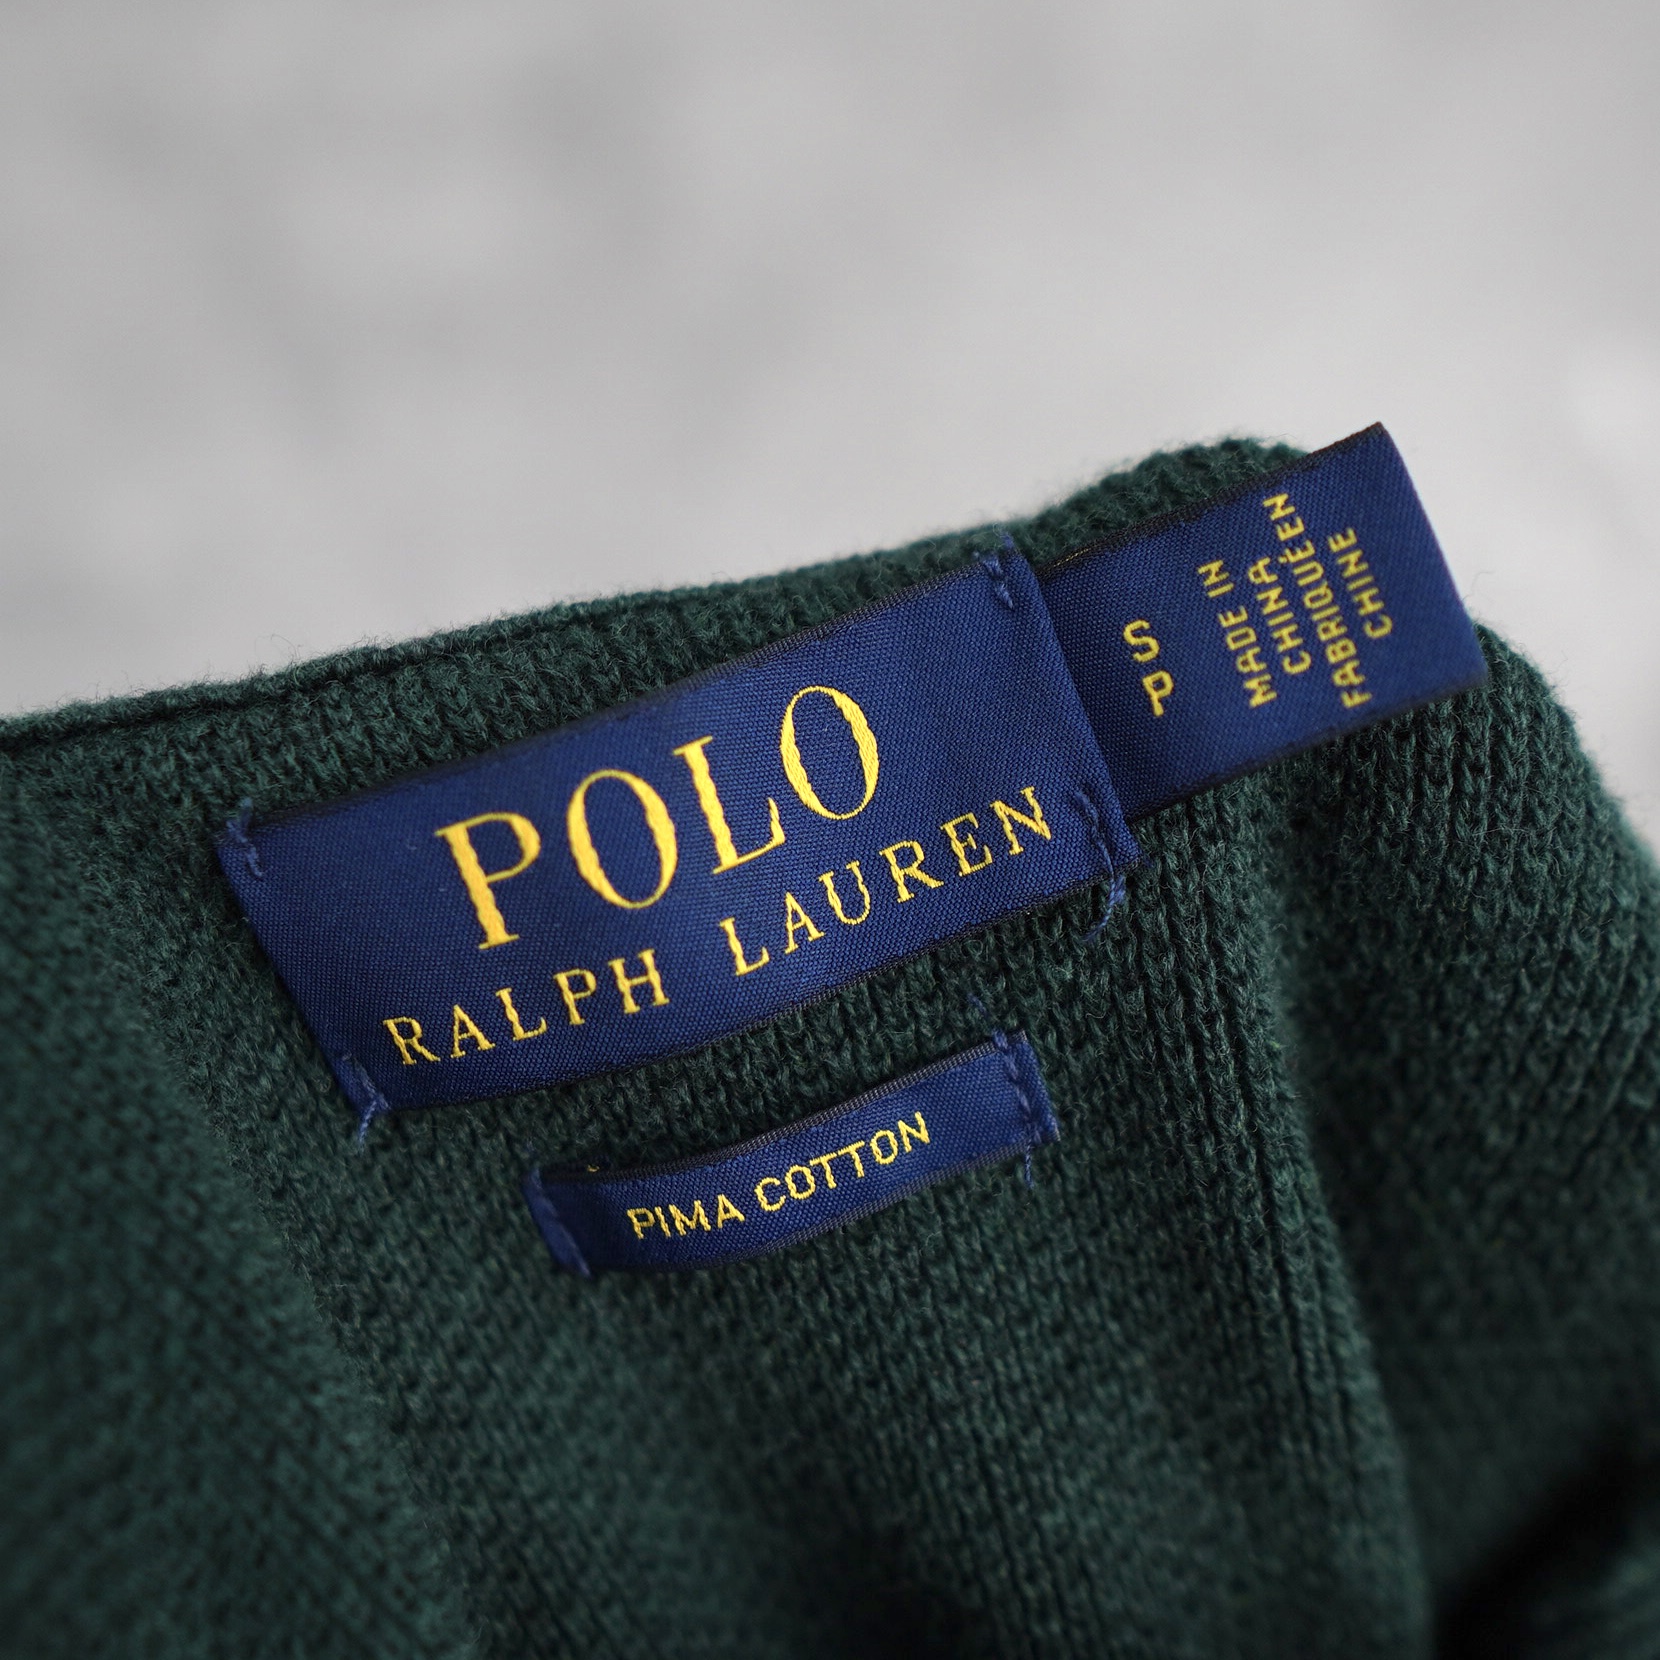 POLO RALPH LAUREN / ポロラルフローレン ニット / セーター